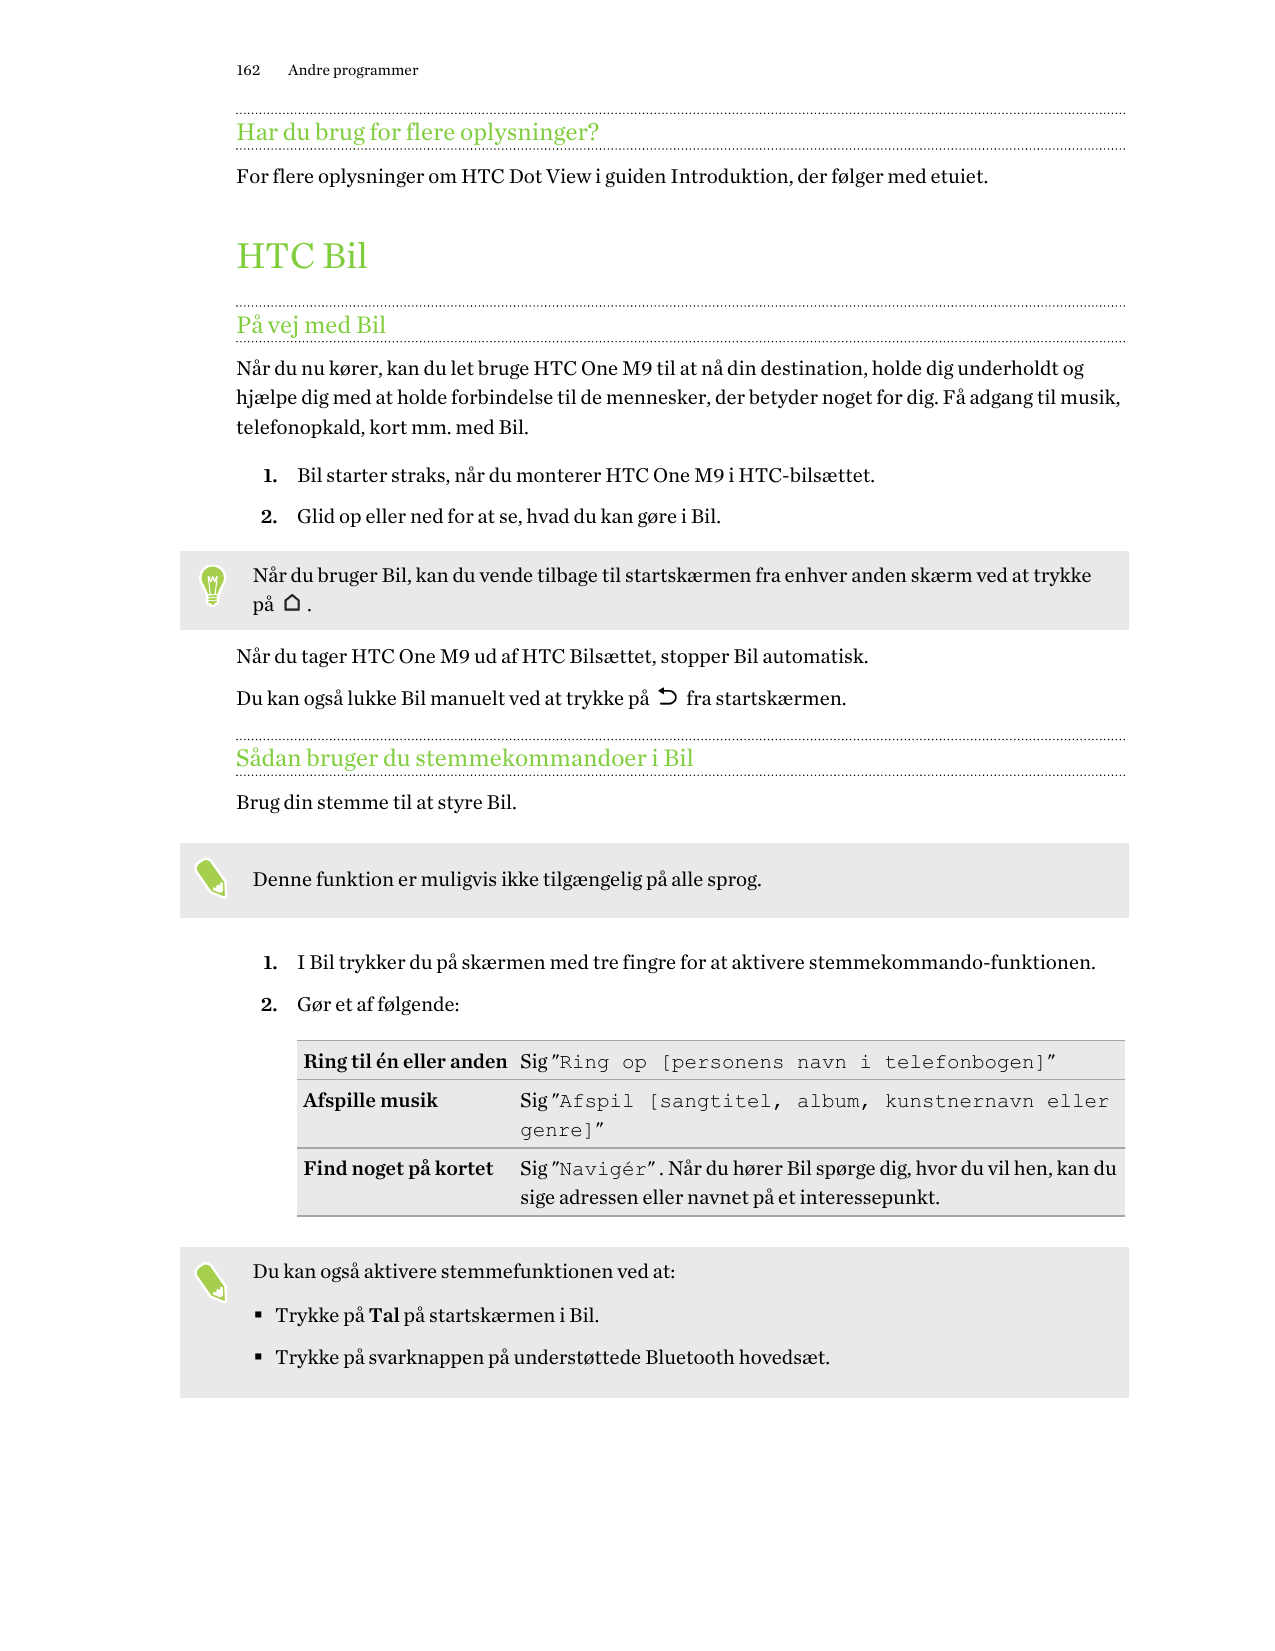 162Andre programmerHar du brug for flere oplysninger?For flere oplysninger om HTC Dot View i guiden Introduktion, der følger med